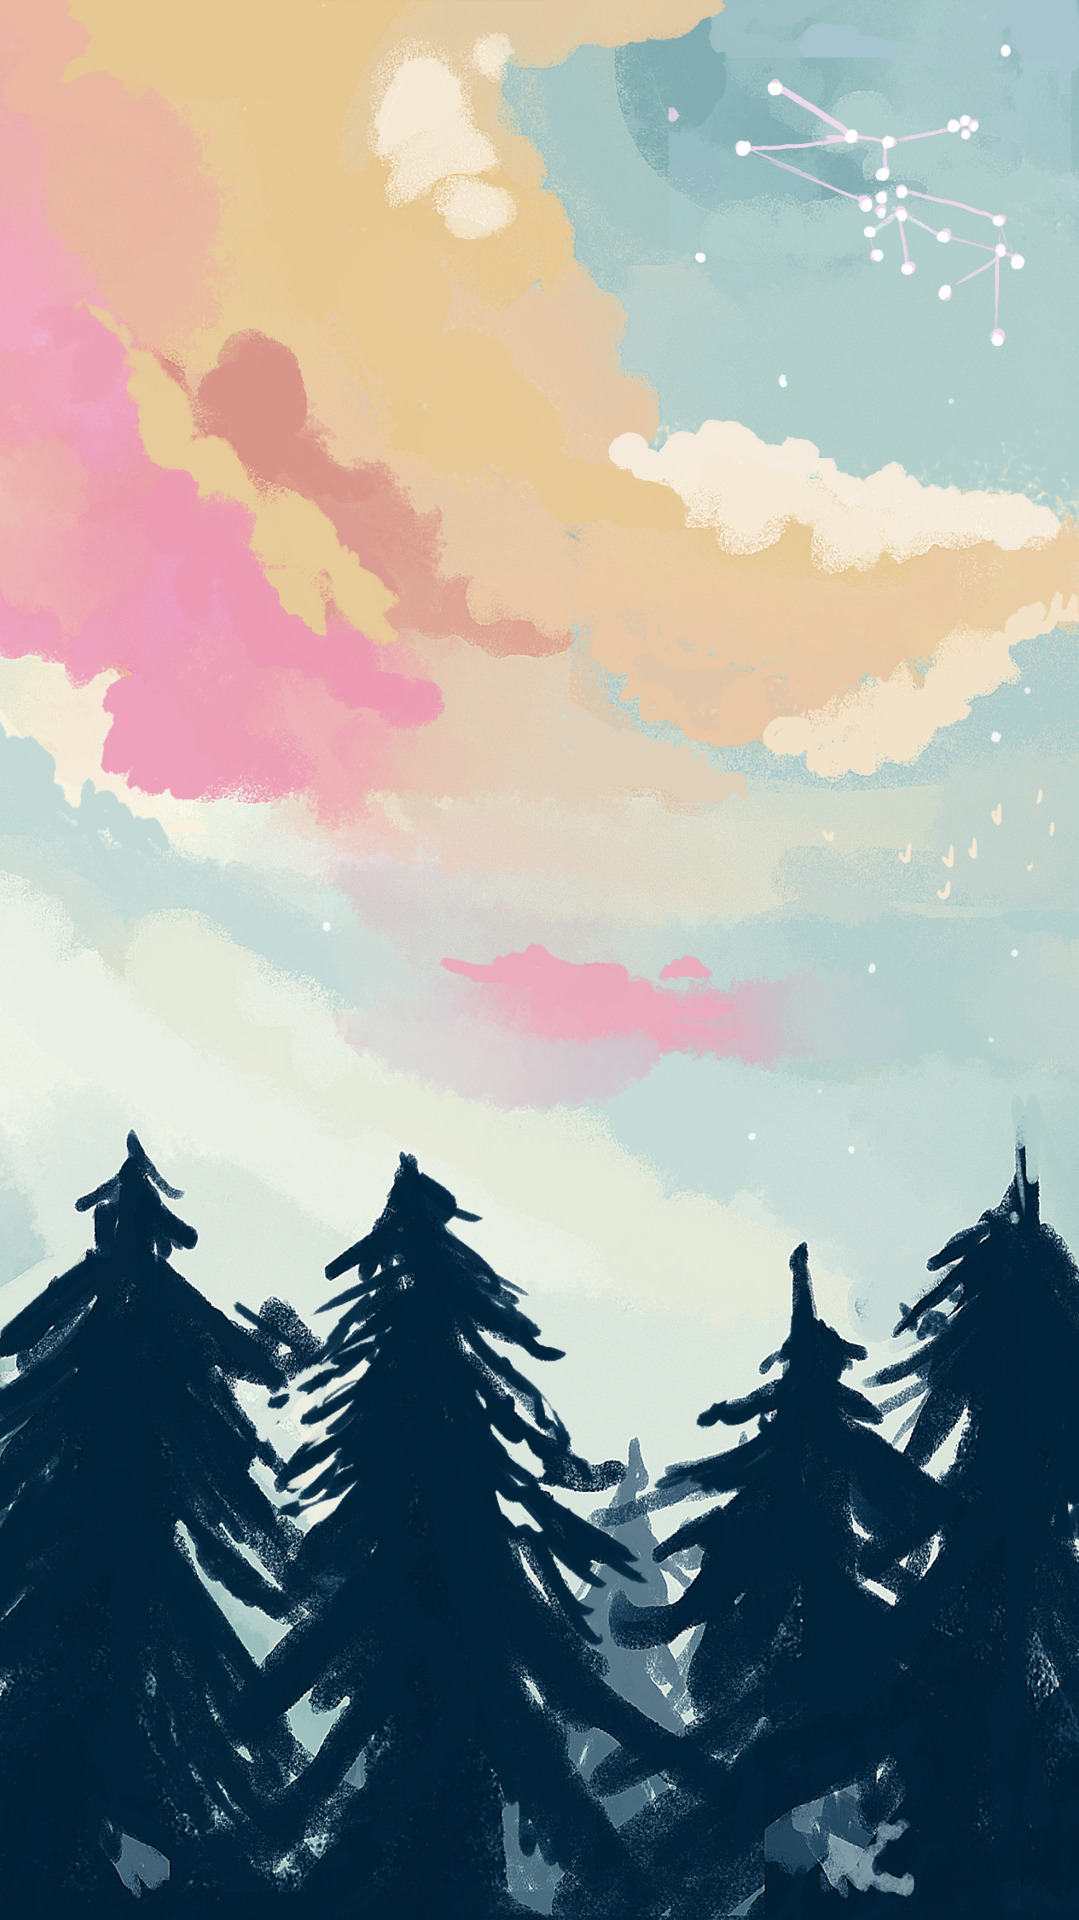 かわいいtumblrの壁紙,空,木,雲,図,漫画